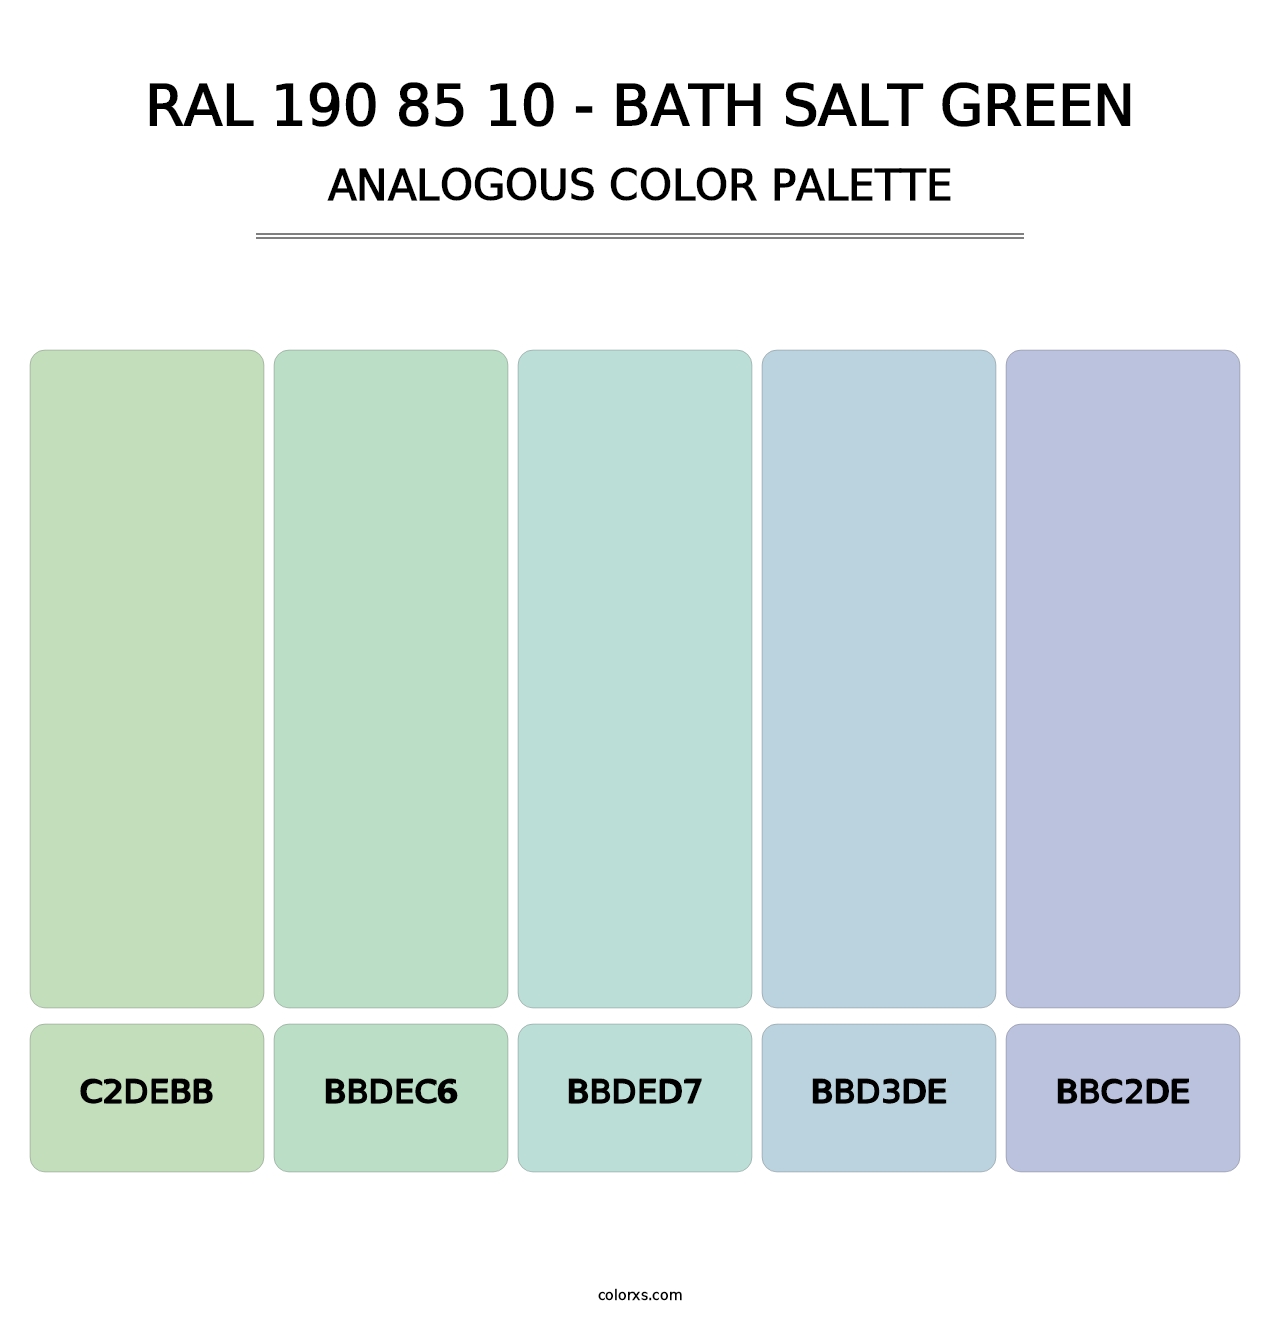 RAL 190 85 10 - Bath Salt Green - Analogous Color Palette